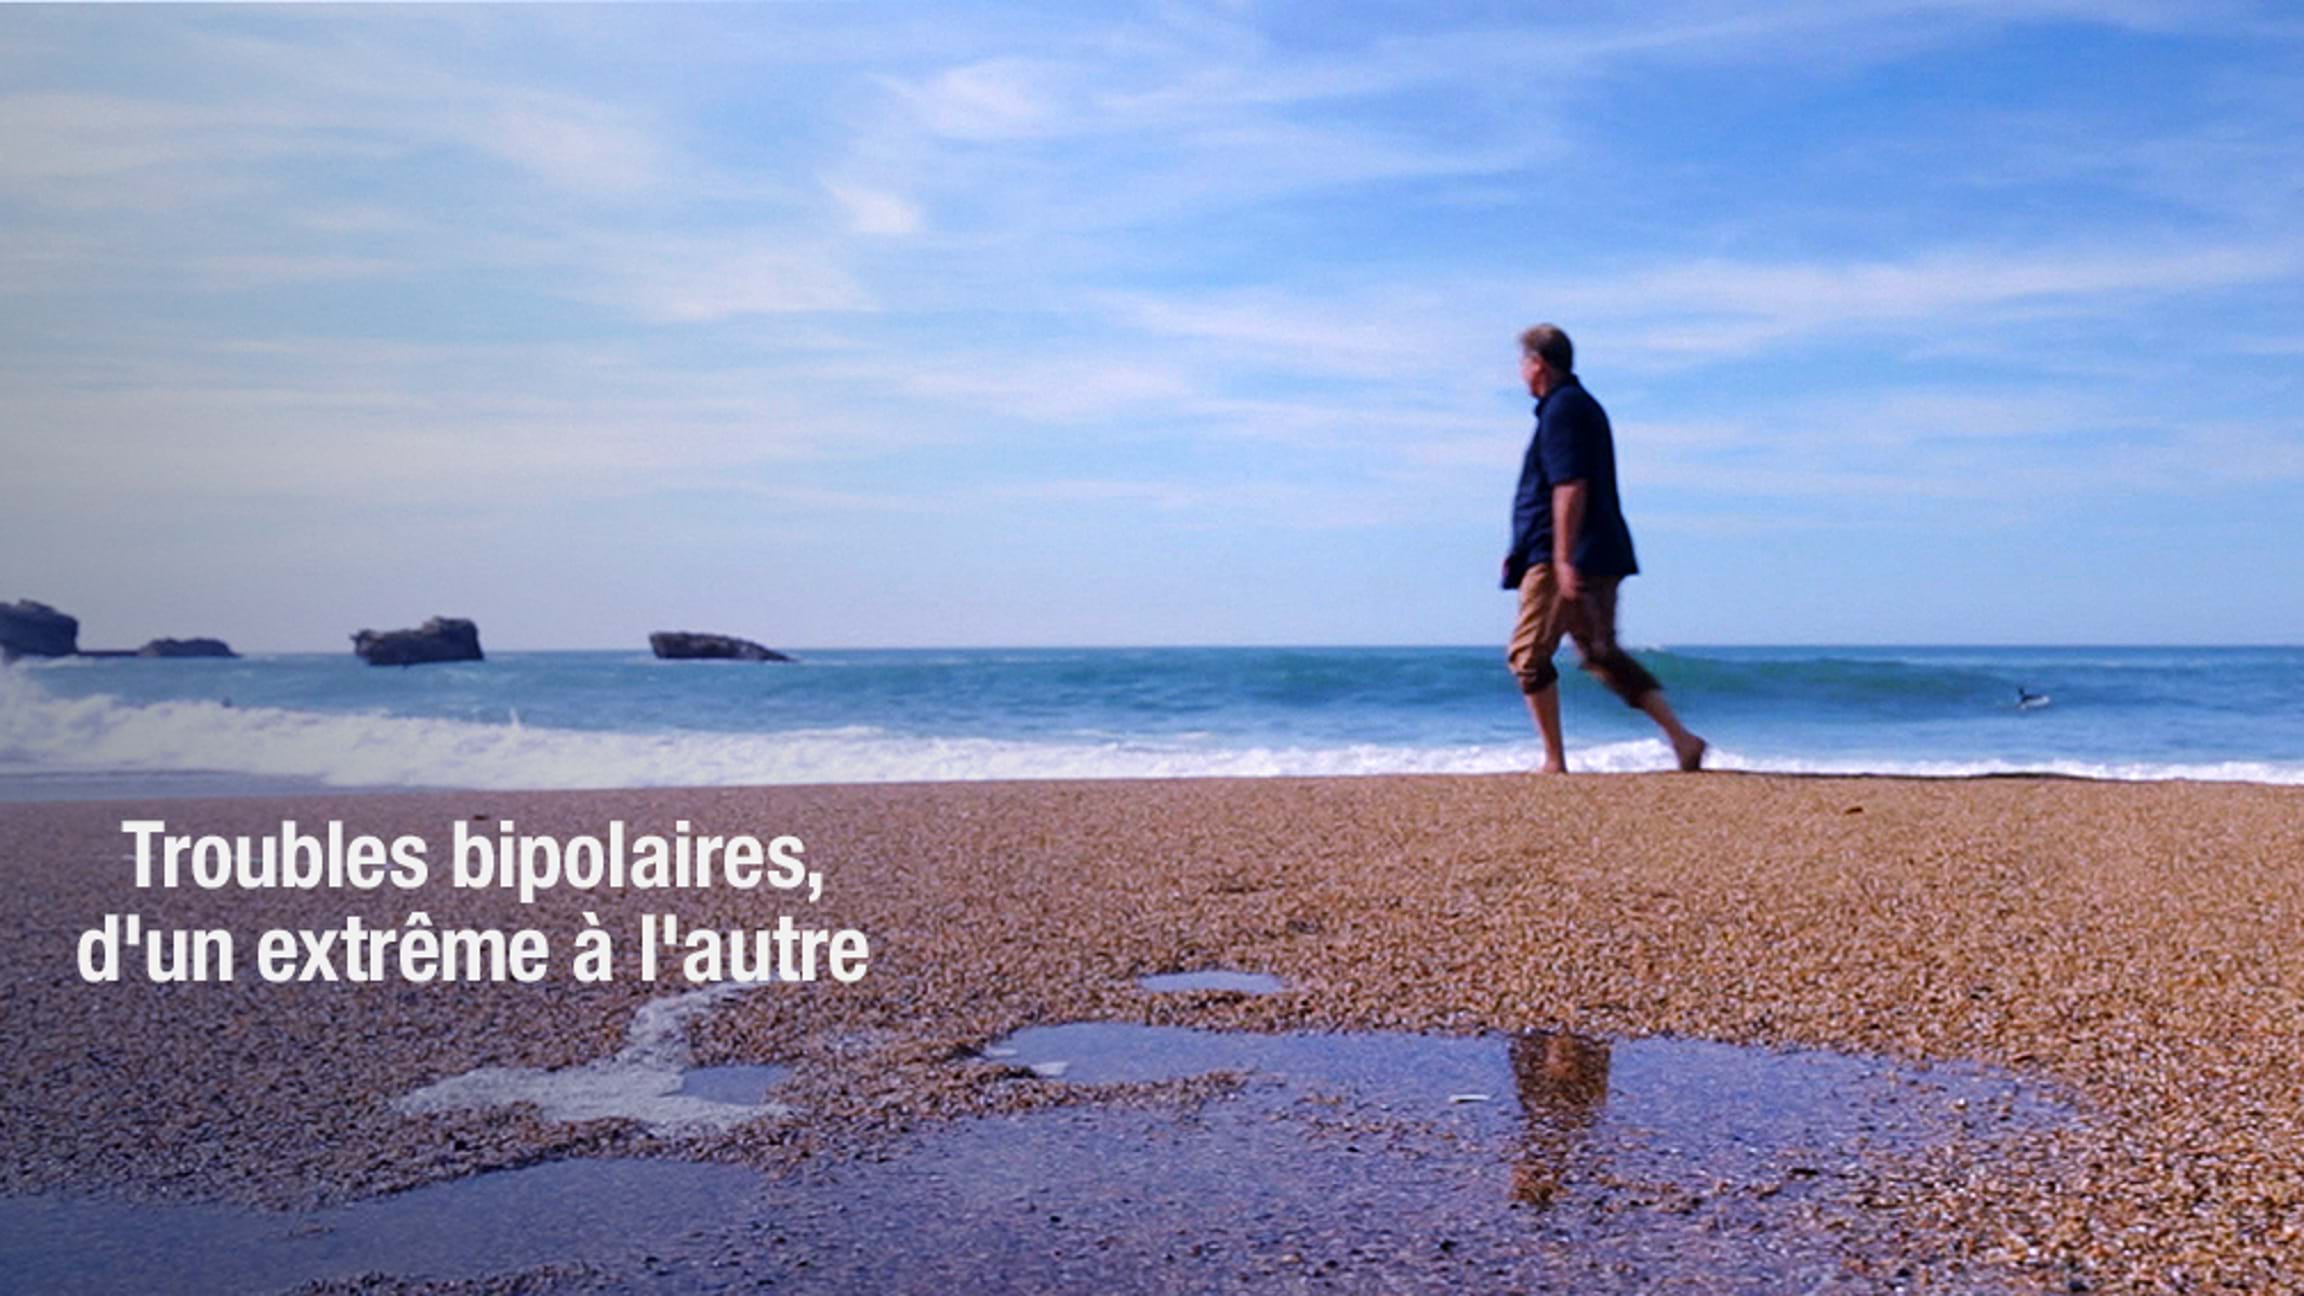 Description de l'image : un homme marche sur une plage. On peut lire le titre : "Bipolaires, d'un pôle à l'autre".